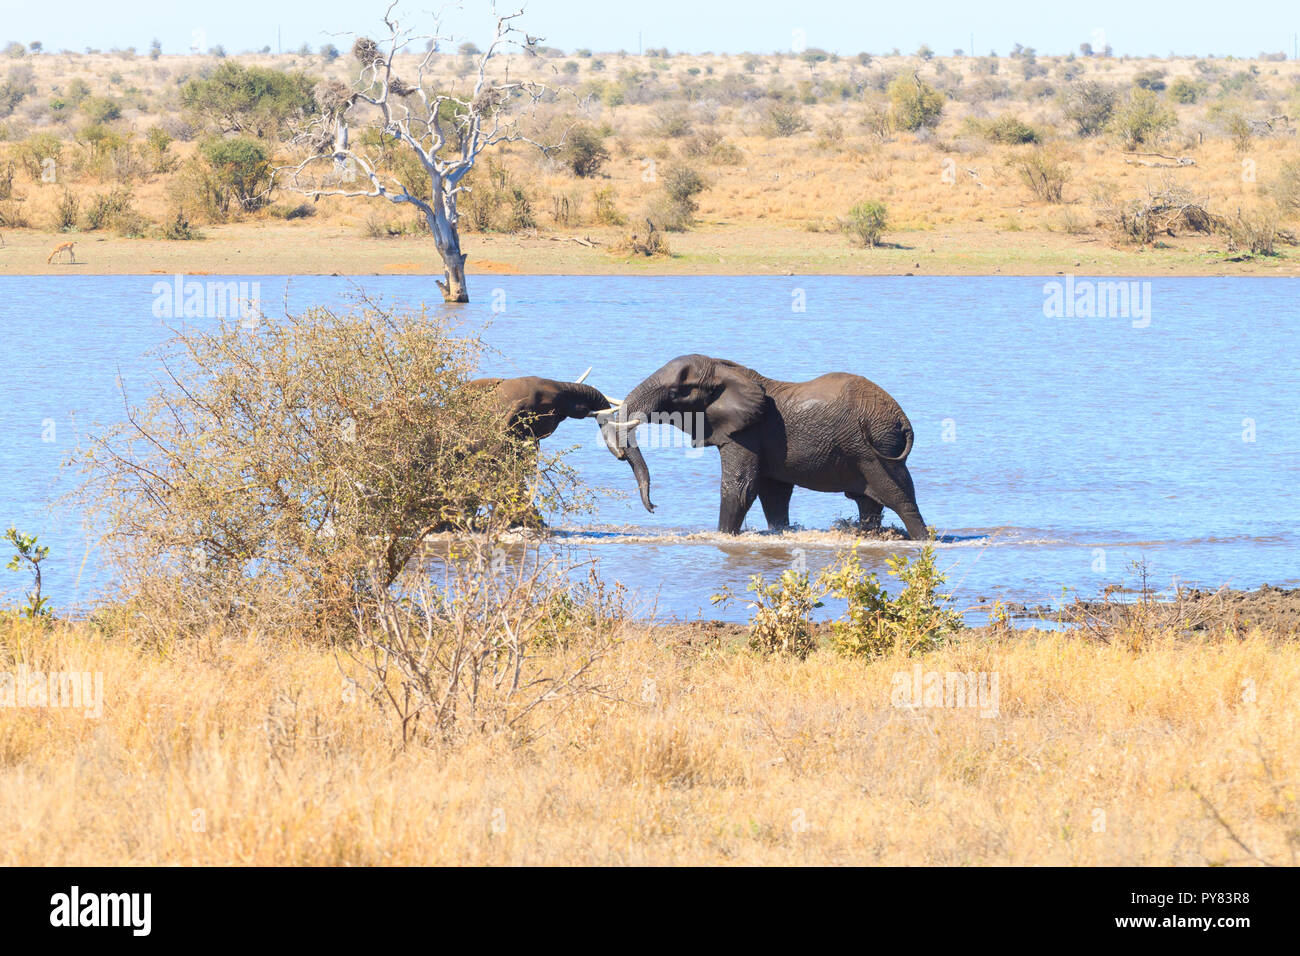 Paar Elefanten kämpfen im Wasser vom Krüger Nationalpark, Südafrika. Afrikanische Tierwelt. Loxodonta africana Stockfoto